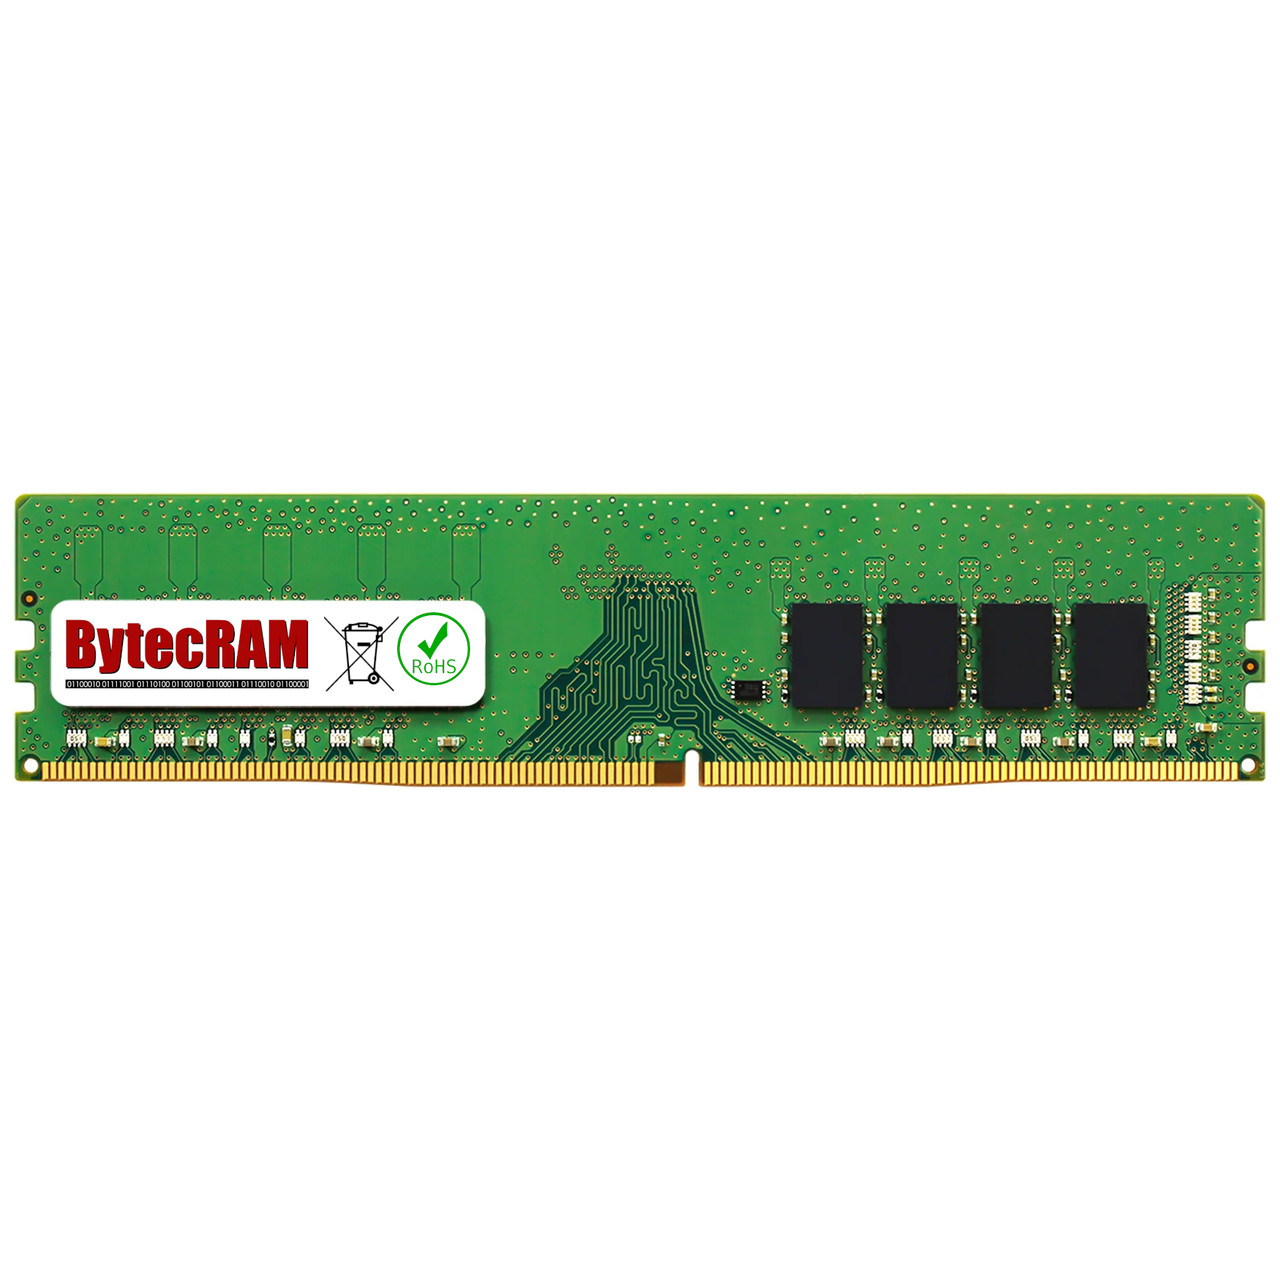 eBay*16GB Lenovo ThinkSystem ST50 7Y48 DDR4 2666MHz UDIMM Memory RAM Upgrade